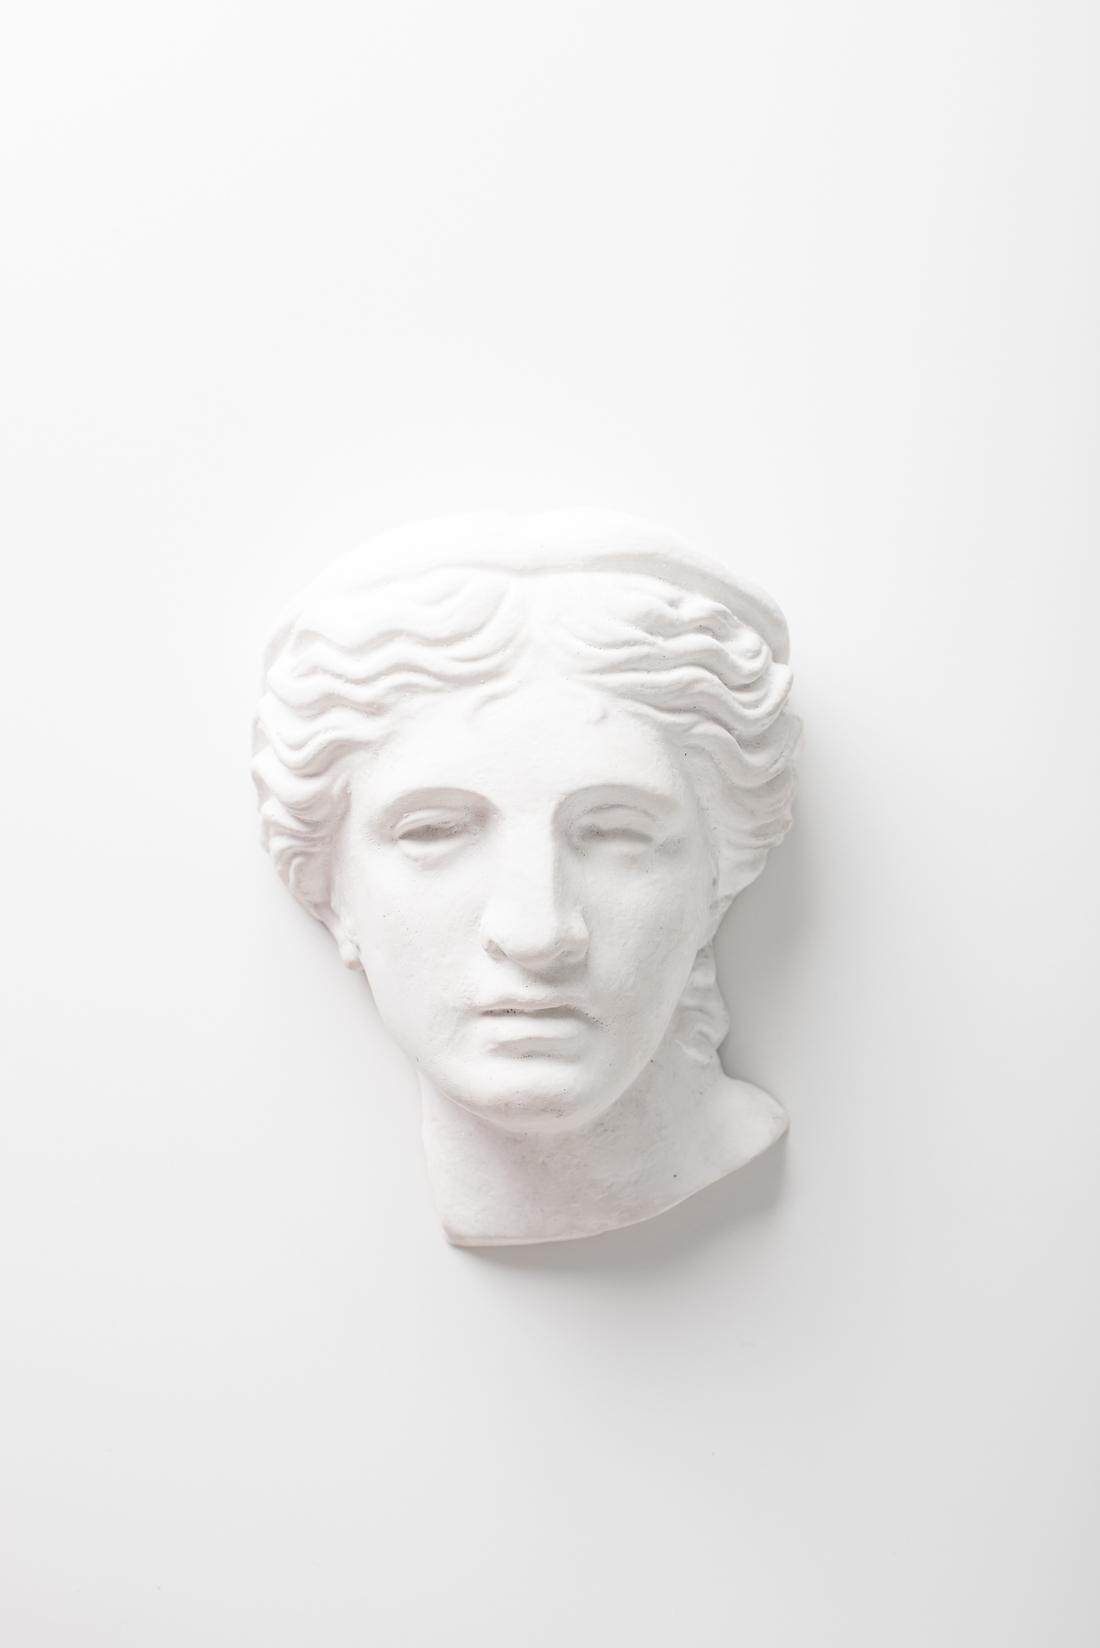 Гипсовая скульптура, голова античной красавицы Antiqua. Белый интерьерный декор из гипса, скульптурная женская голова.